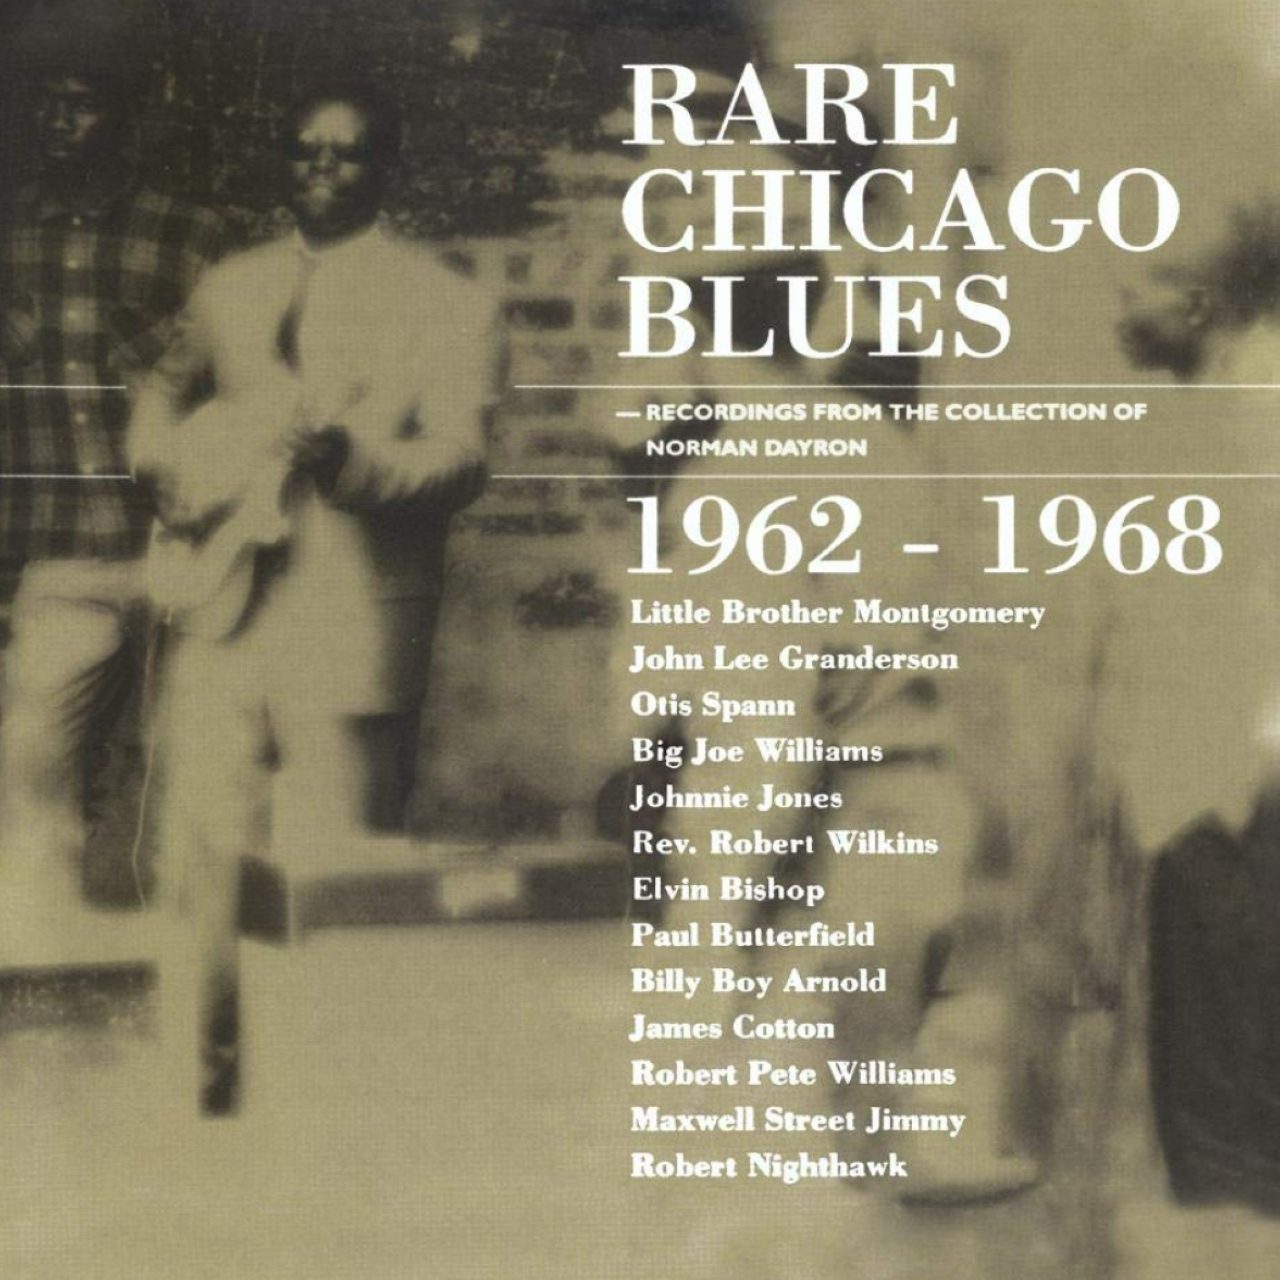 A.A.V.V. - Rare Chicago Blues 1962 - 1968 cover album